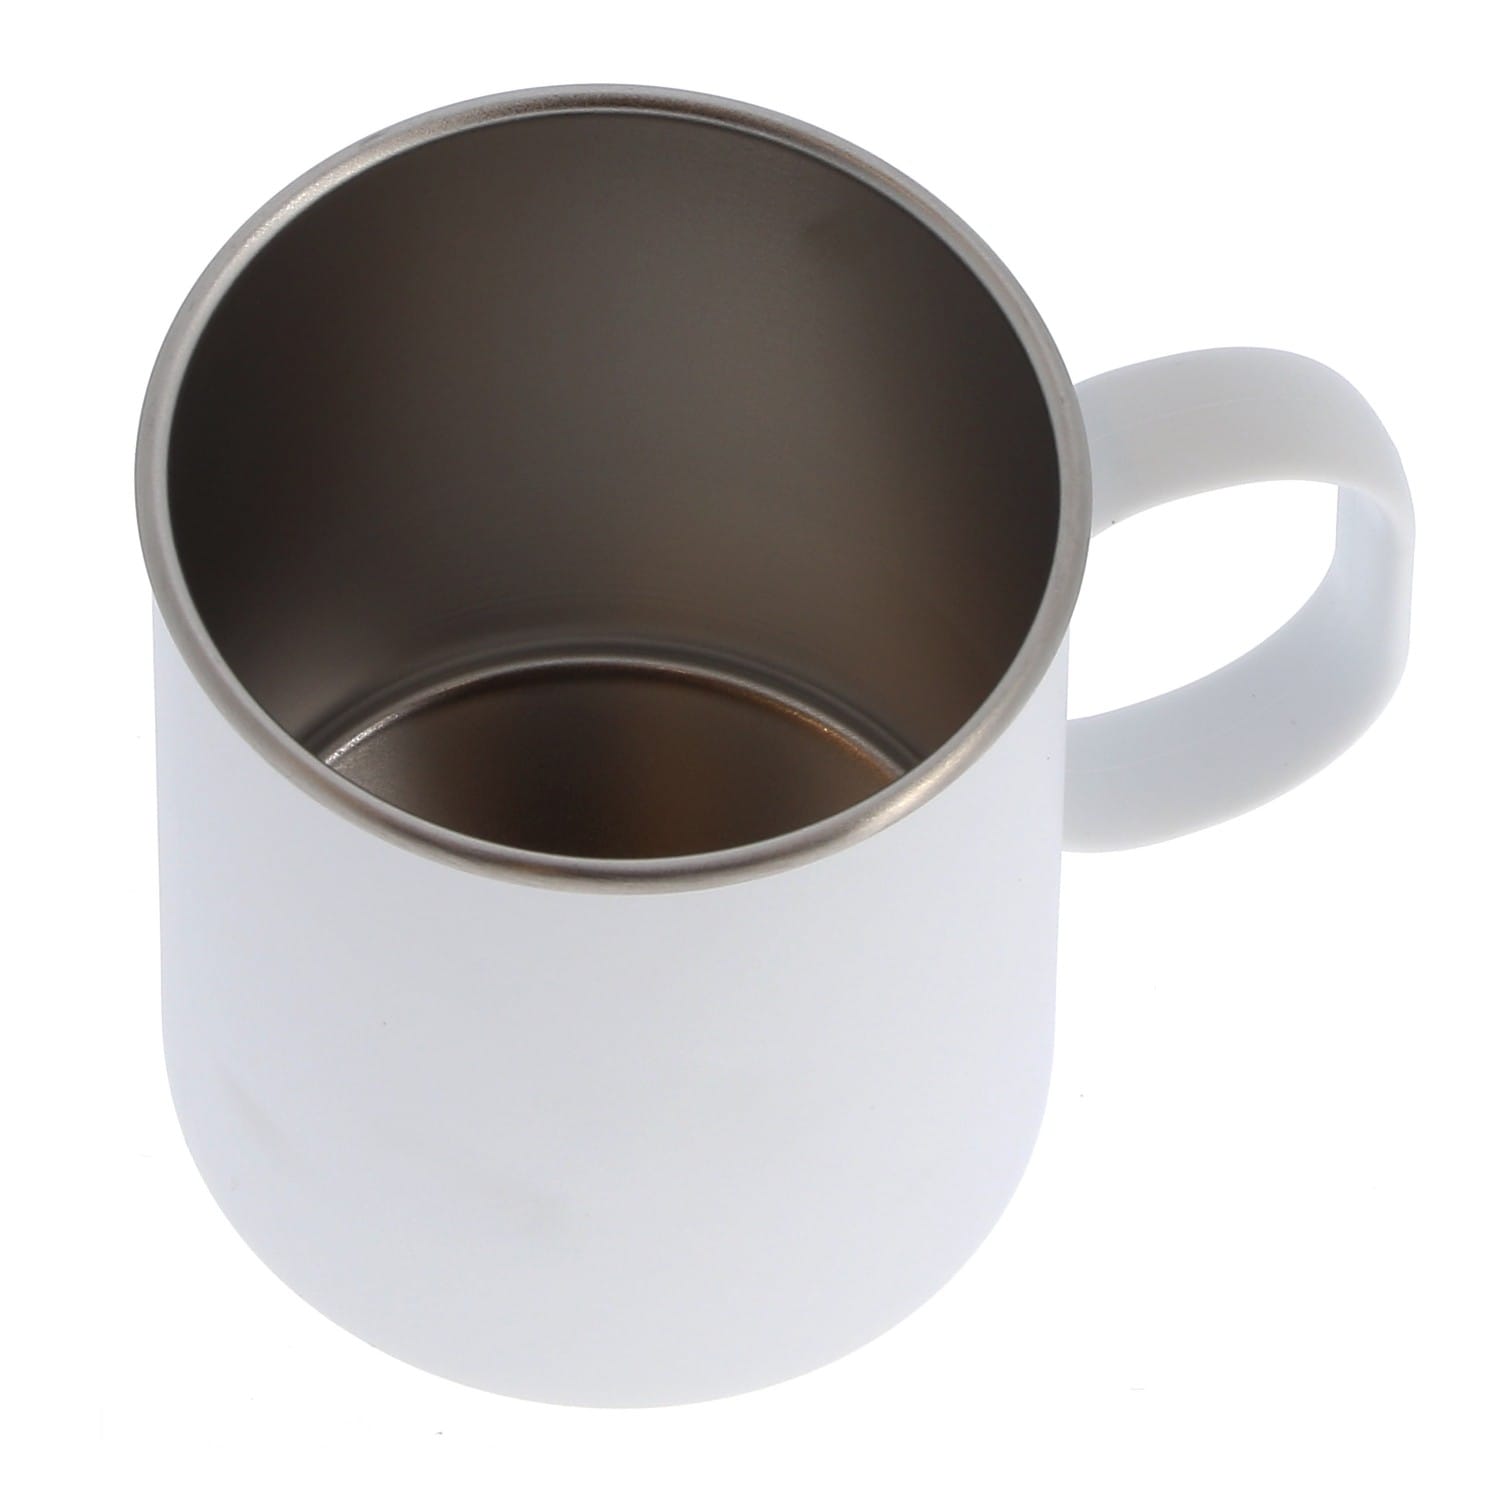 Mug céramique 330ml (11oz) Blanc mat - Qualité AAA - Diamètre 82mm